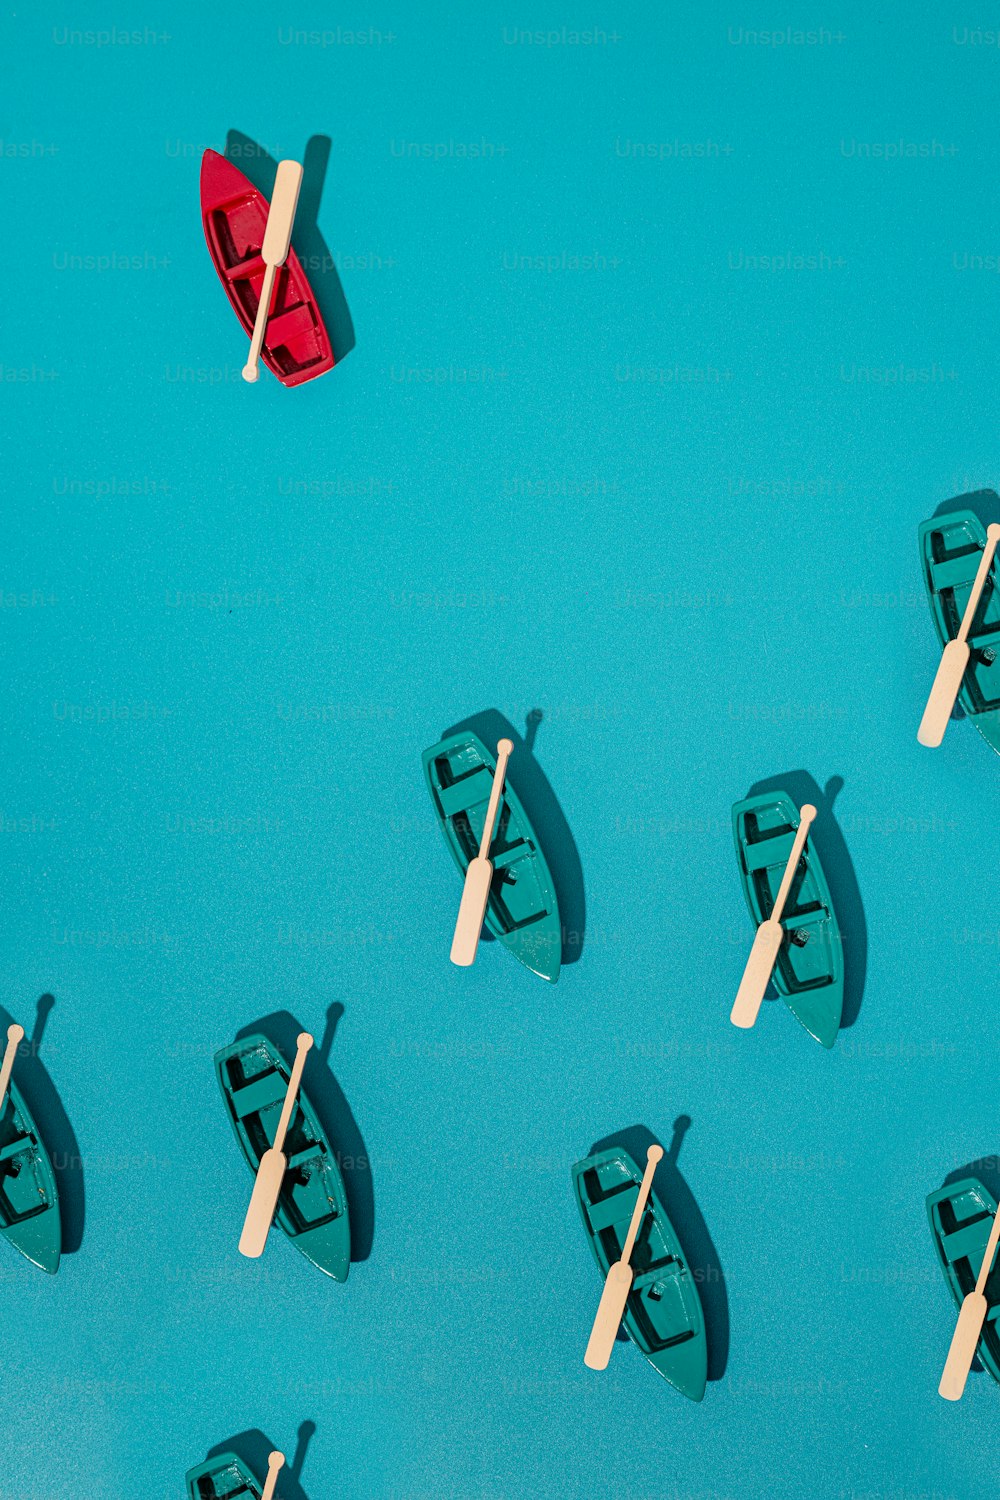 Un grupo de pequeñas embarcaciones flotando sobre una superficie azul